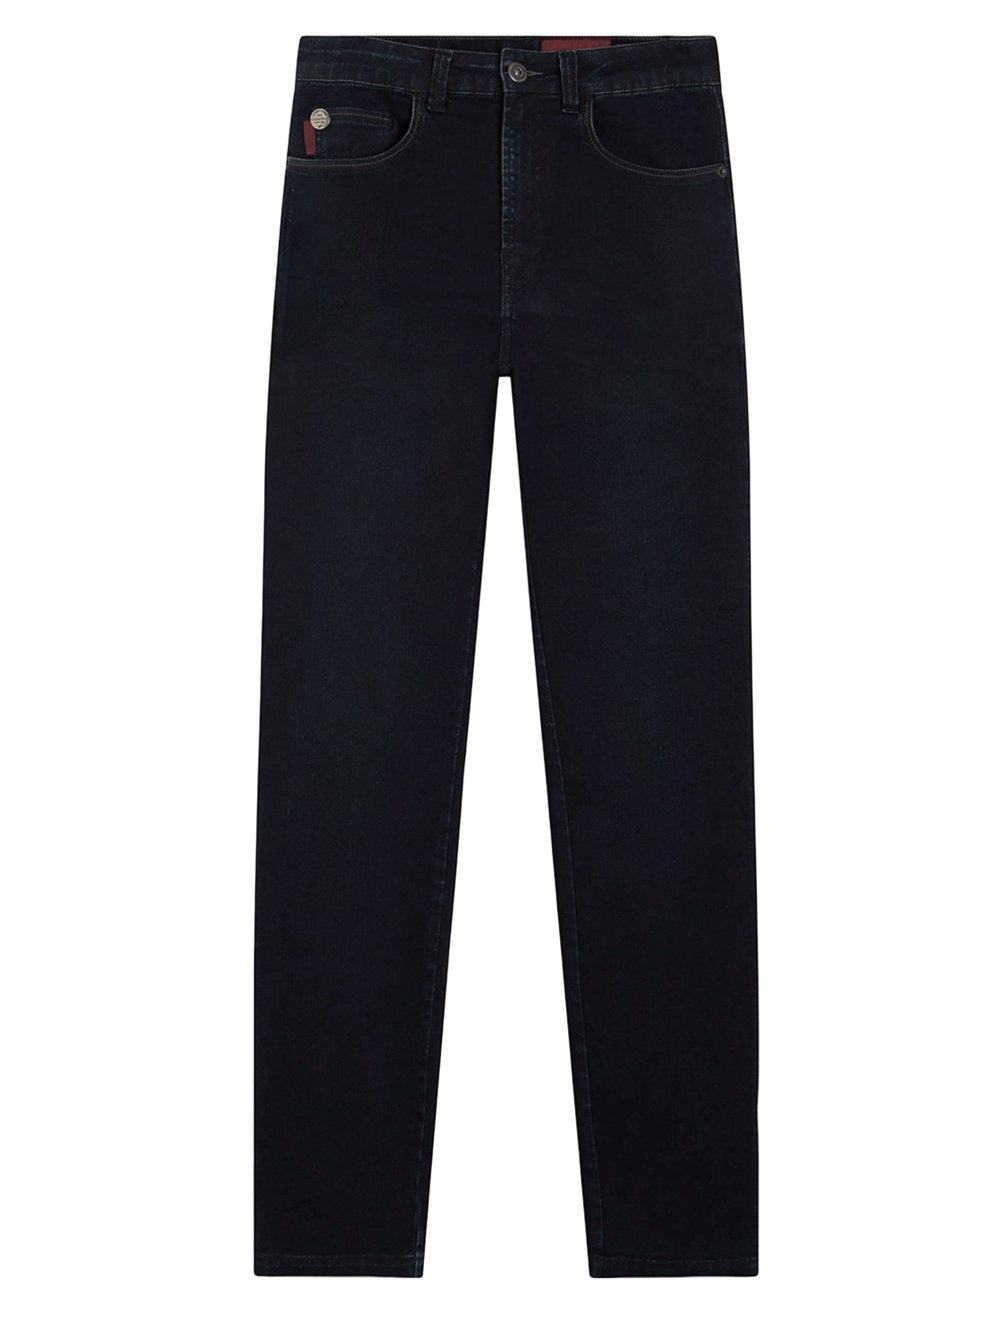 Calça Ellus Jeans Masculina Skinny Classic Intense Blue 5 Pockets Escura